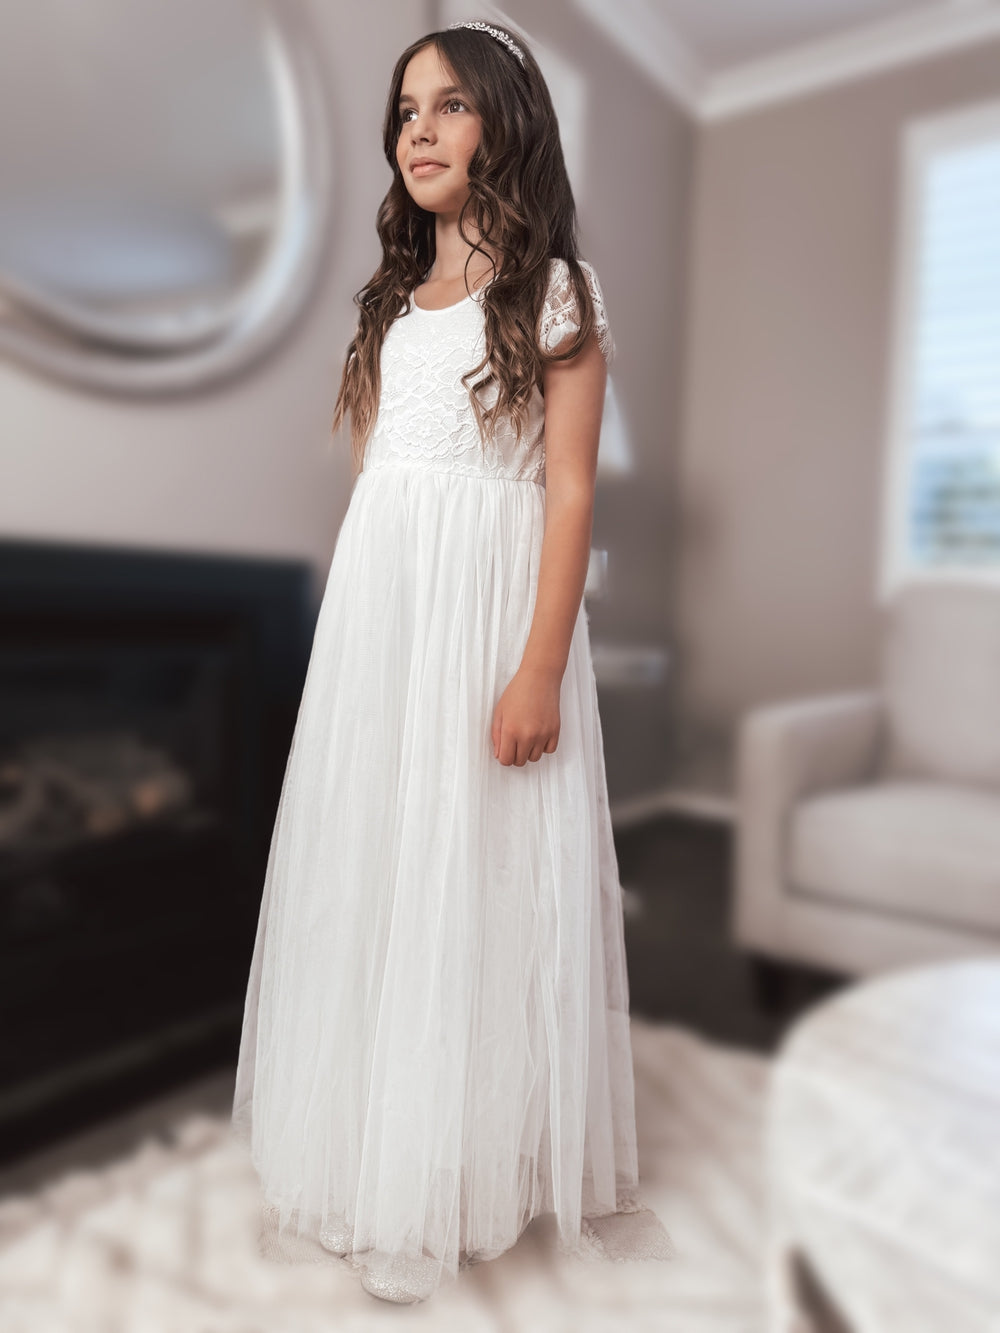 Celeste Girls White Lace & Tulle Dress - Flower Girl DressesWhite first communion dress - full length dress